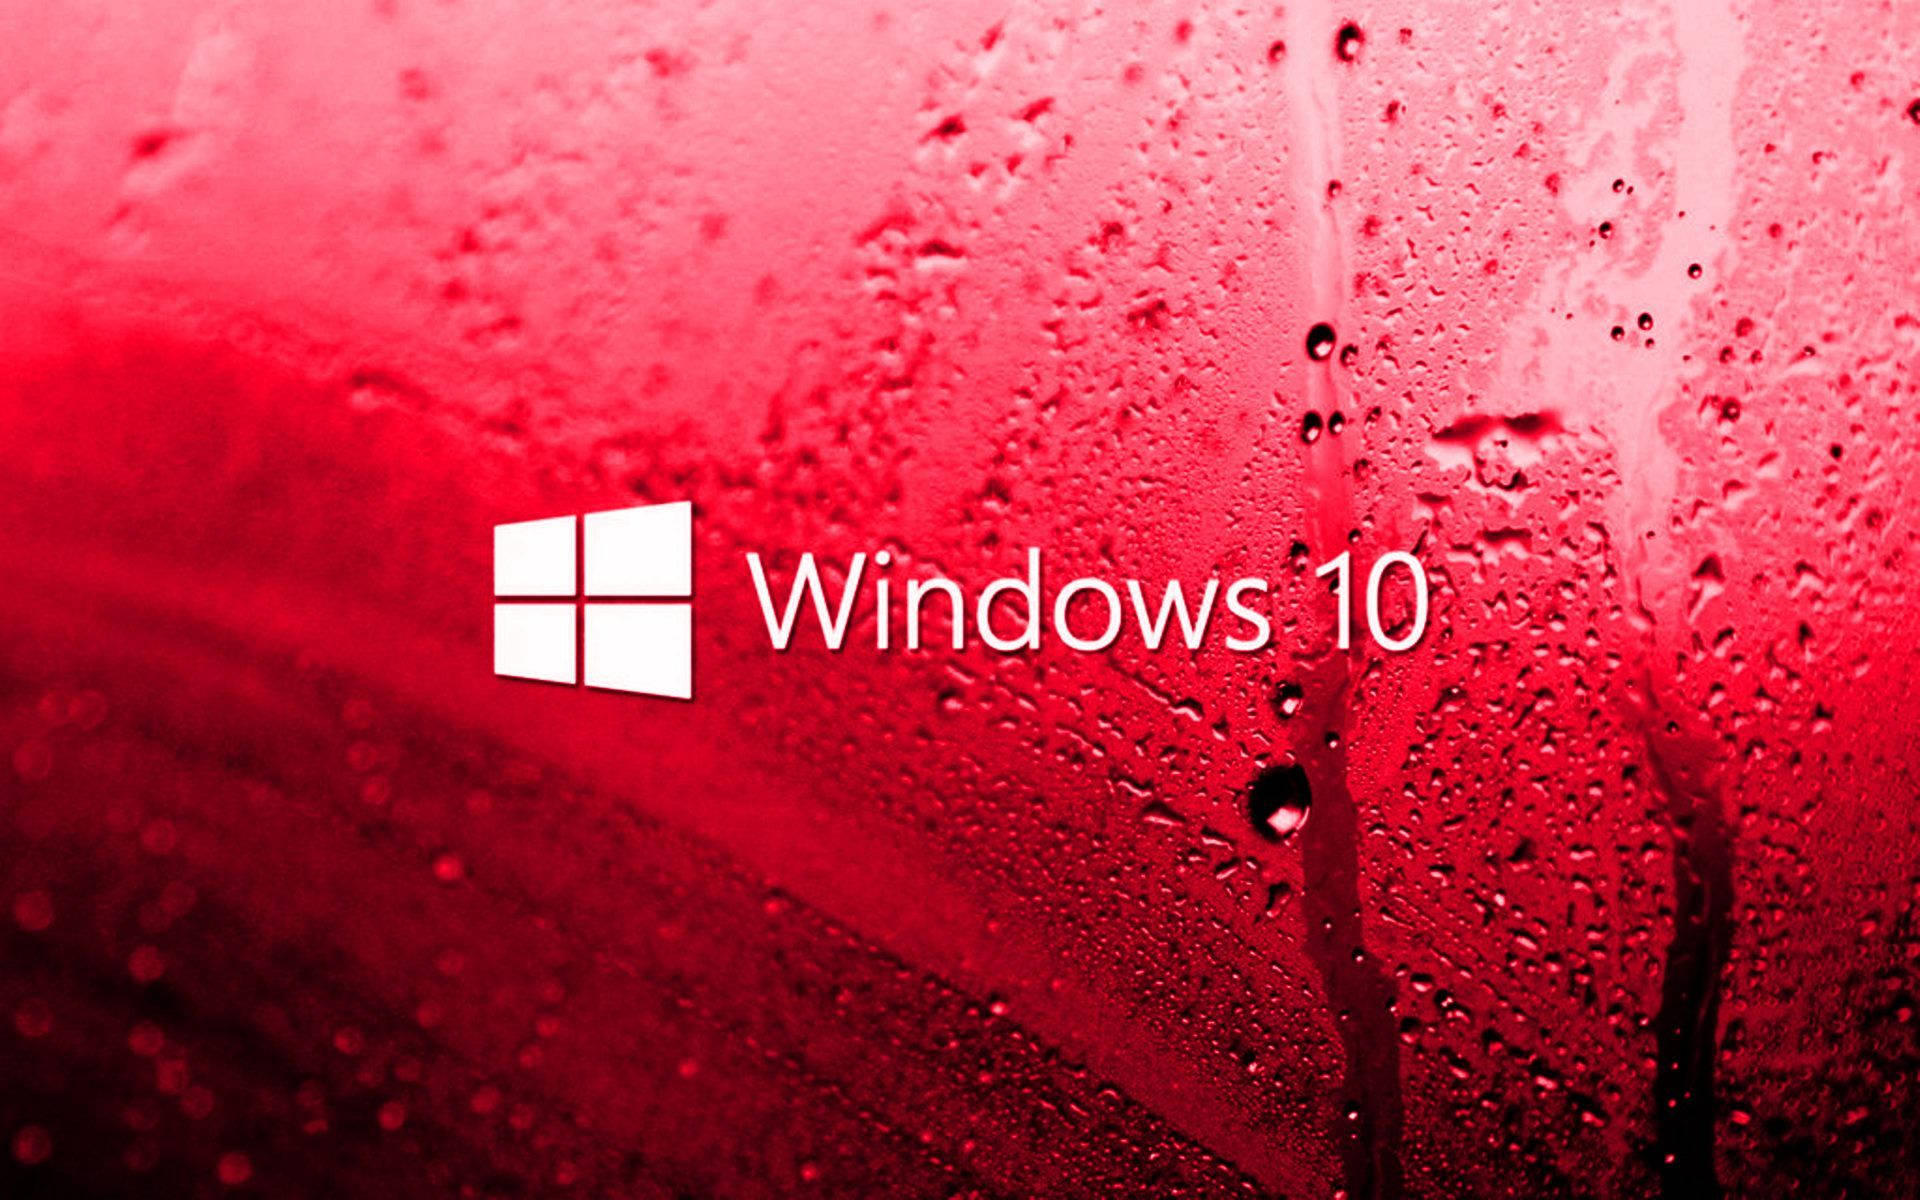 Windows 10 Hd Red Glass